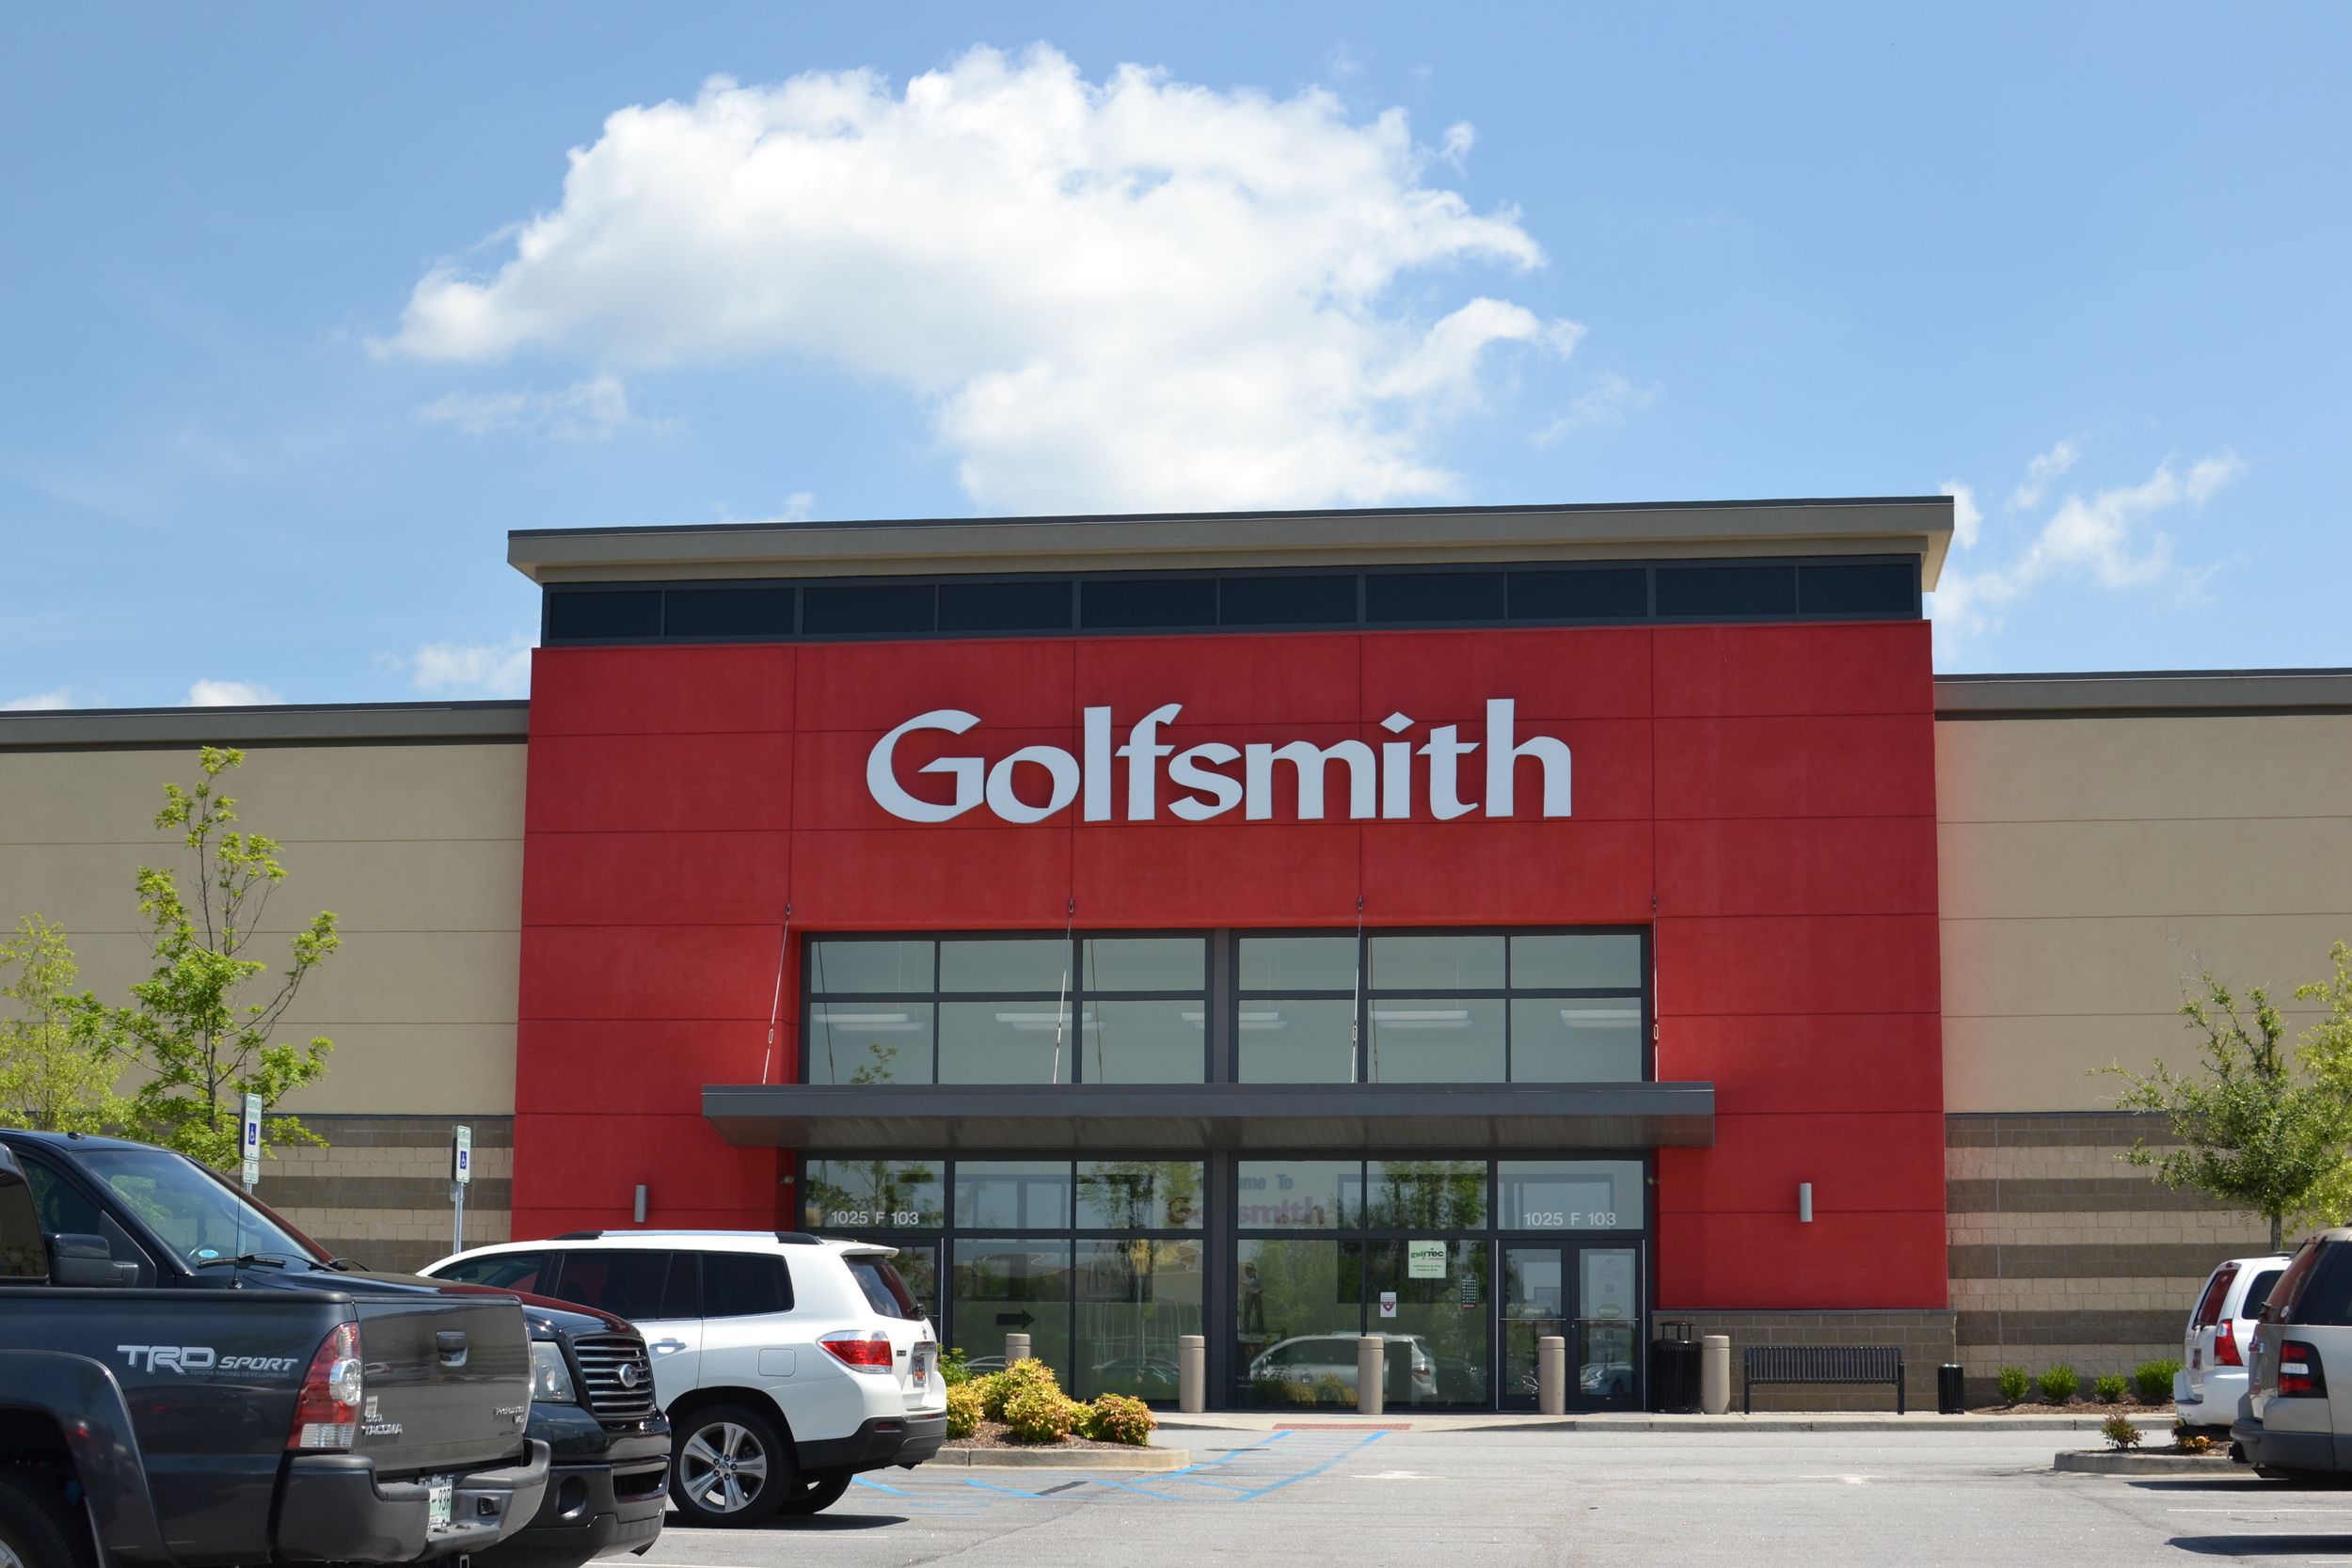  Golfsmith -- Greenville, SC 